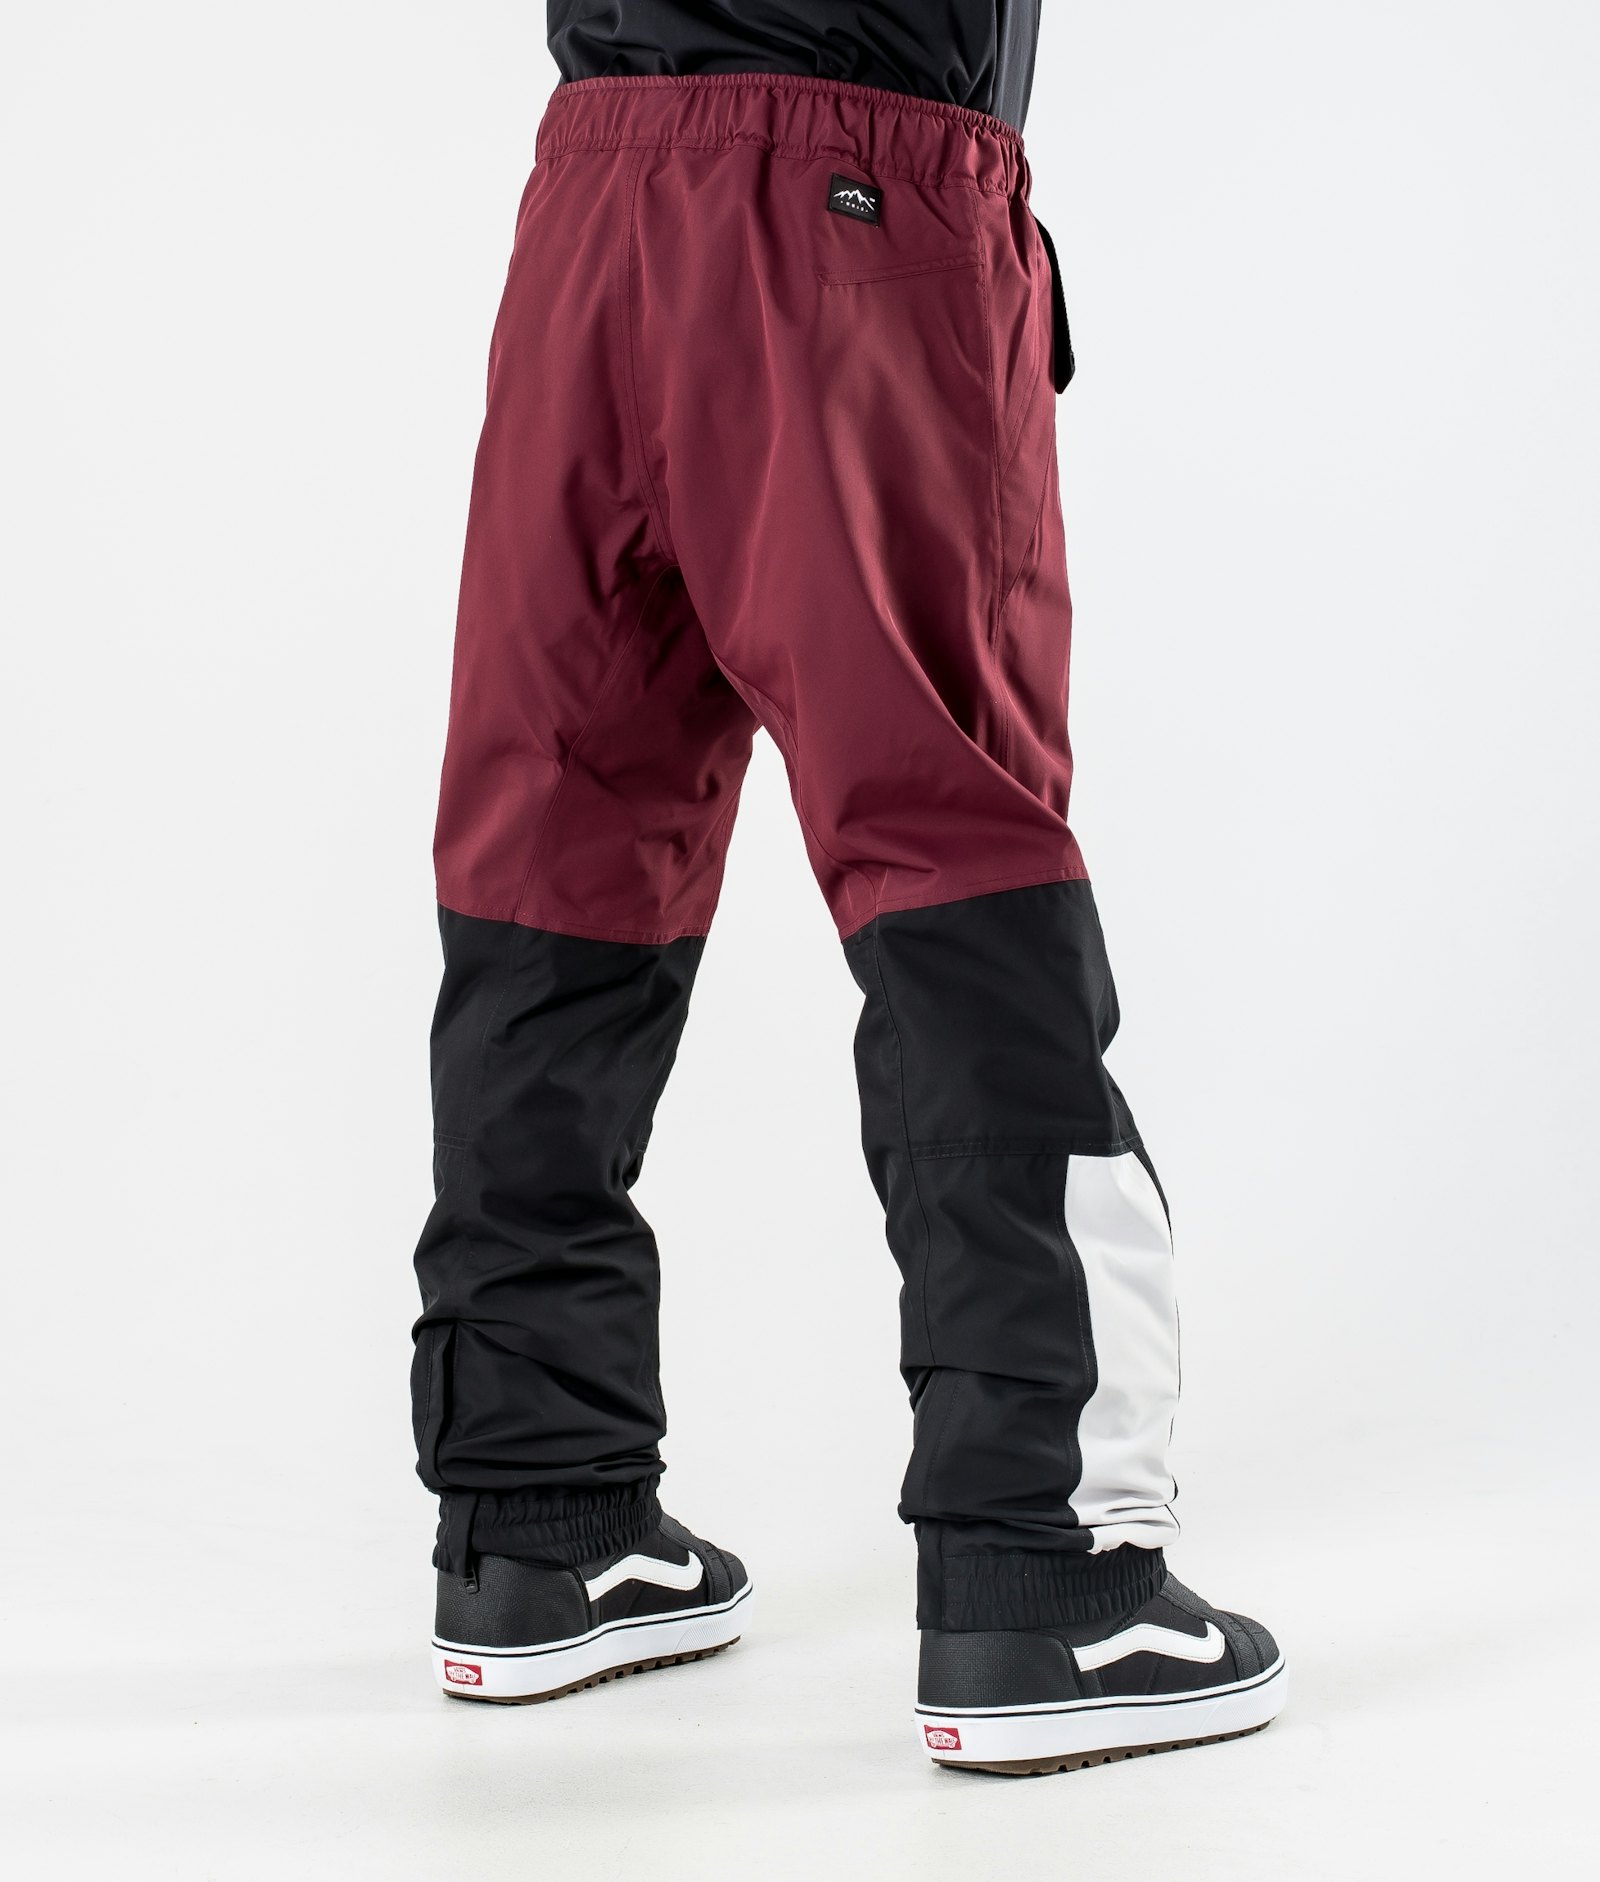 Dope Blizzard 2020 Spodnie Snowboardowe Mężczyźni Limited Edition Burgundy Multicolour